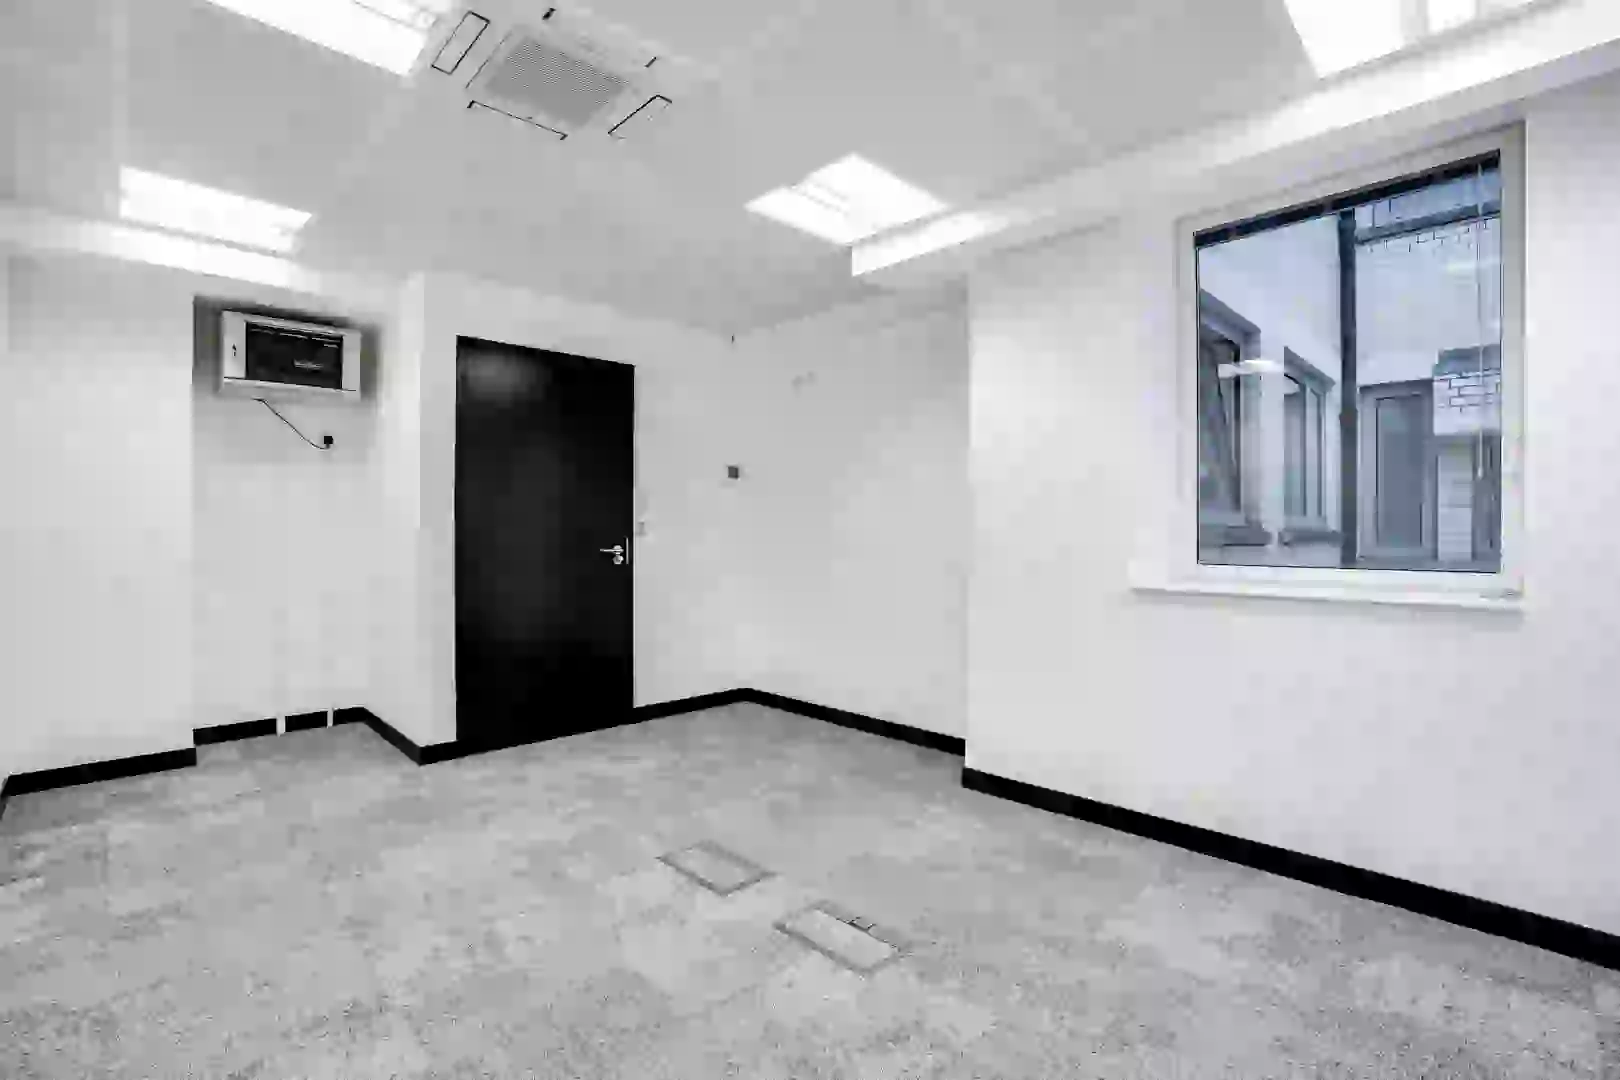 Office space to rent at Fleet Street, 154 - 160 Fleet Street, Blackfriars, London, unit FS.403, 165 sq ft (15 sq m).